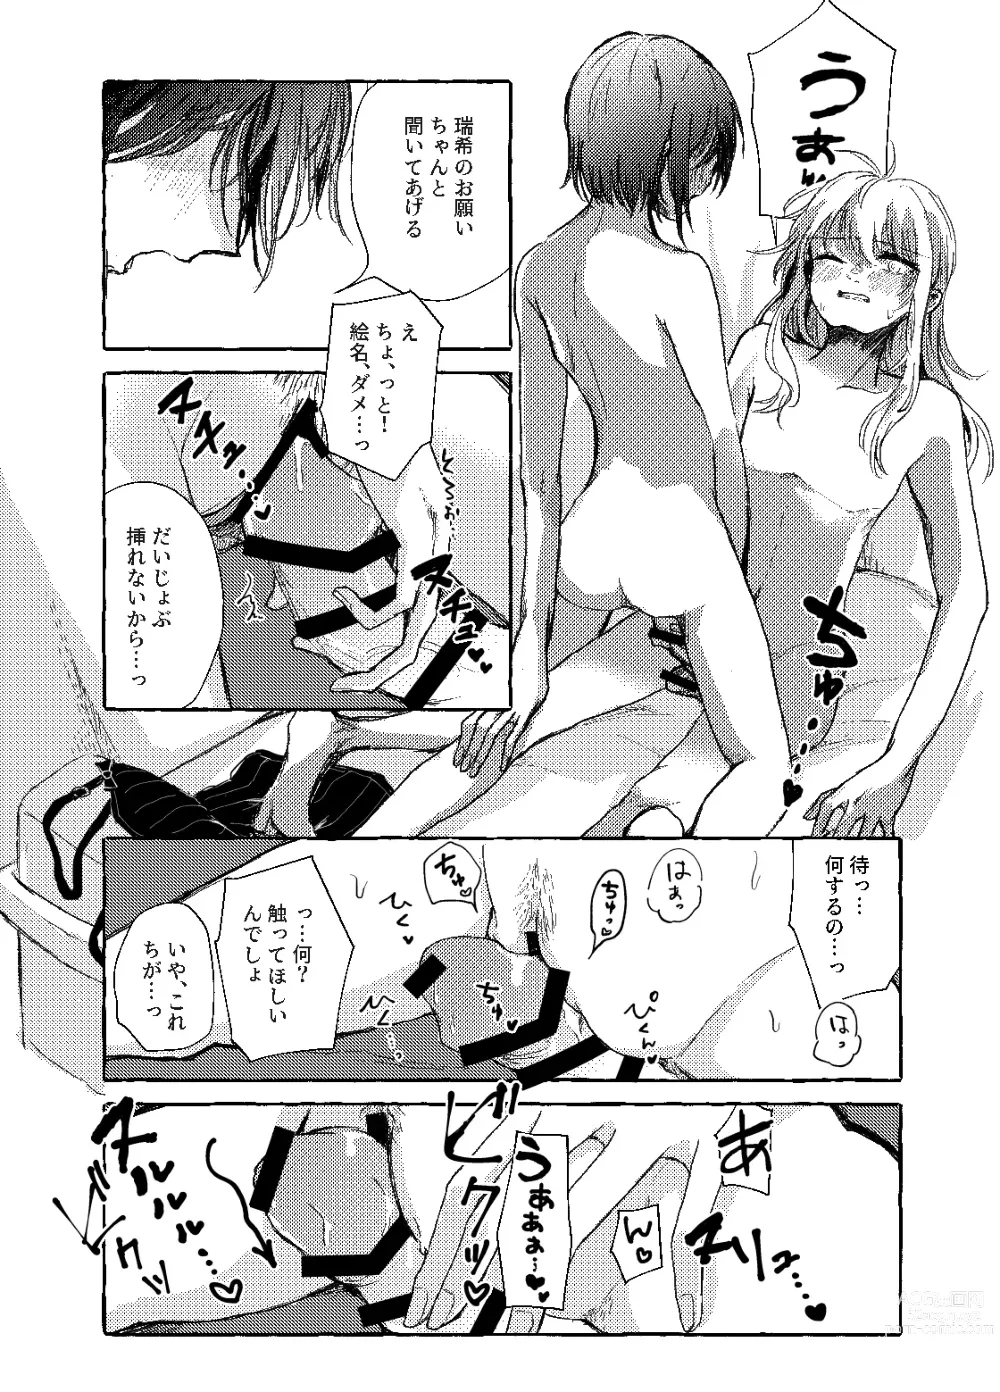 Page 20 of doujinshi Hakoniwa no Naka no Kimi